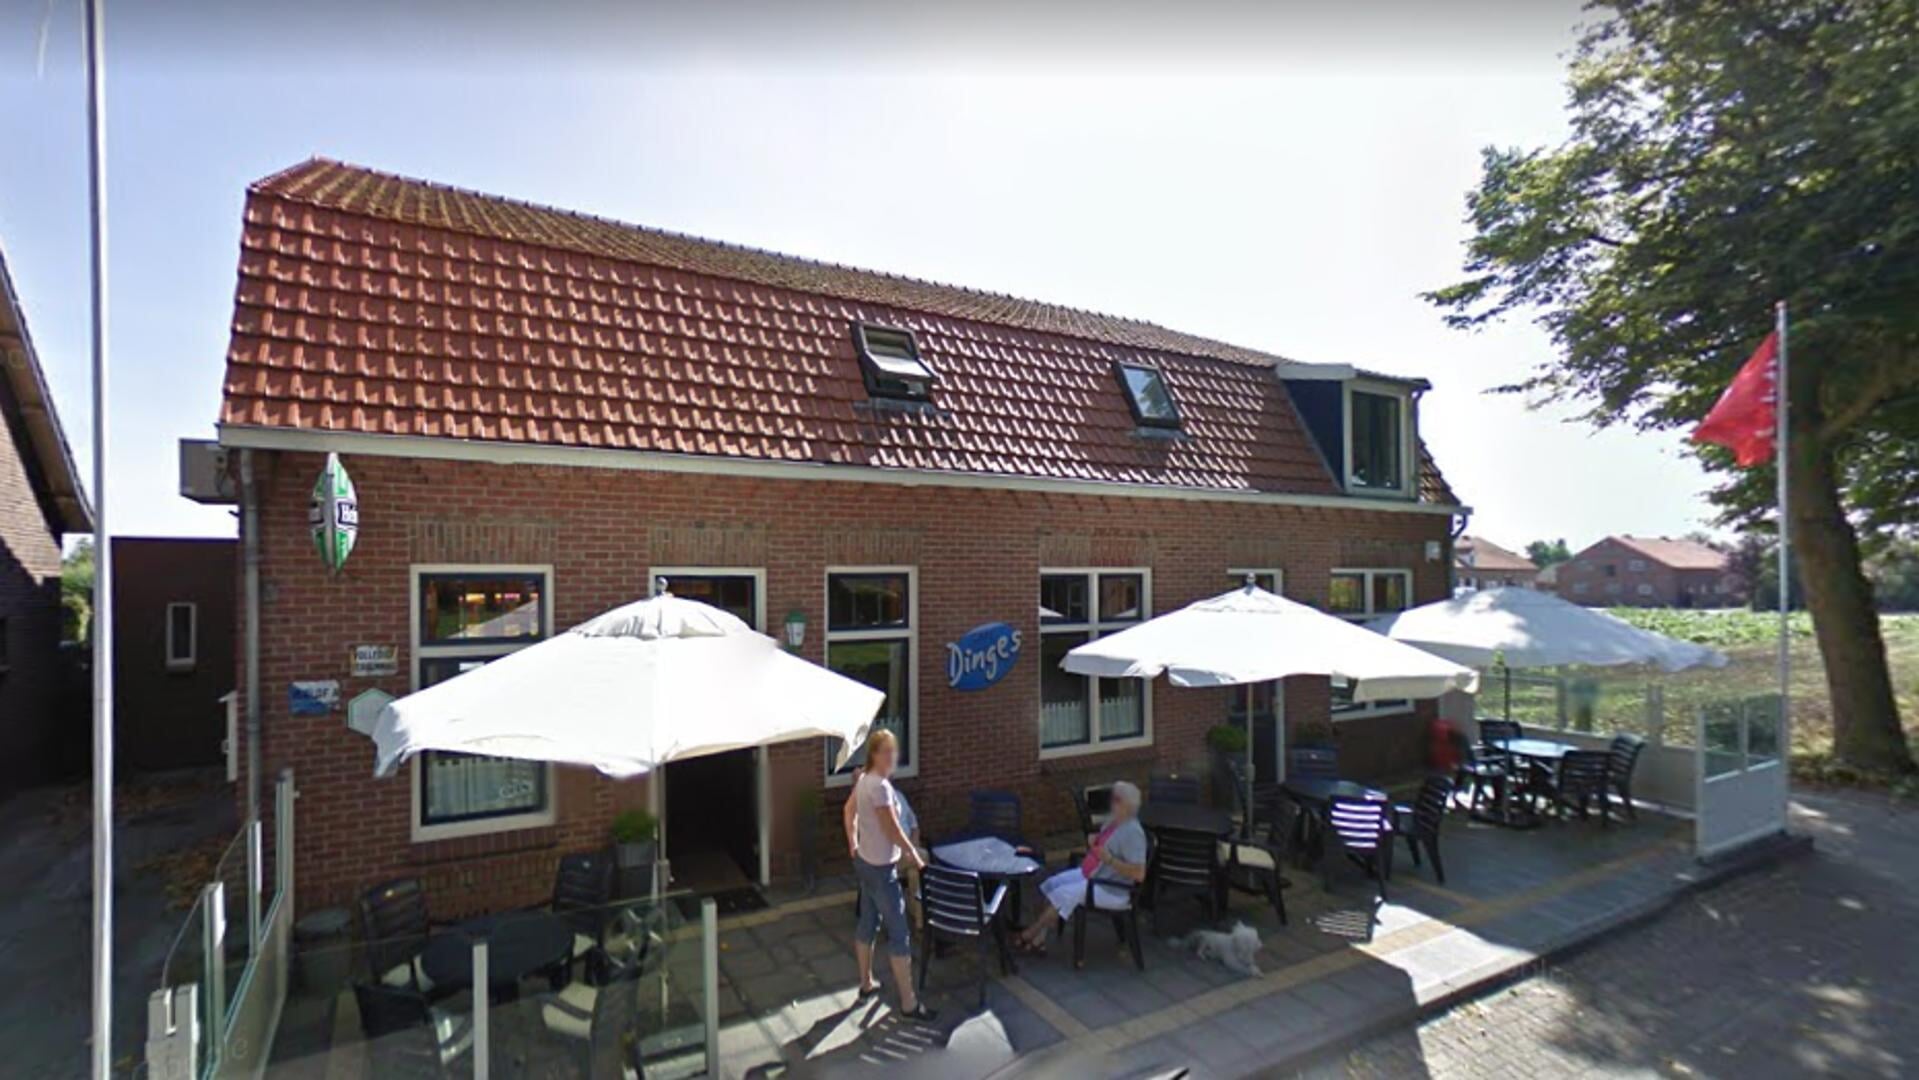 De penning werd uitgereikt in Café Dinges in Westerbeek